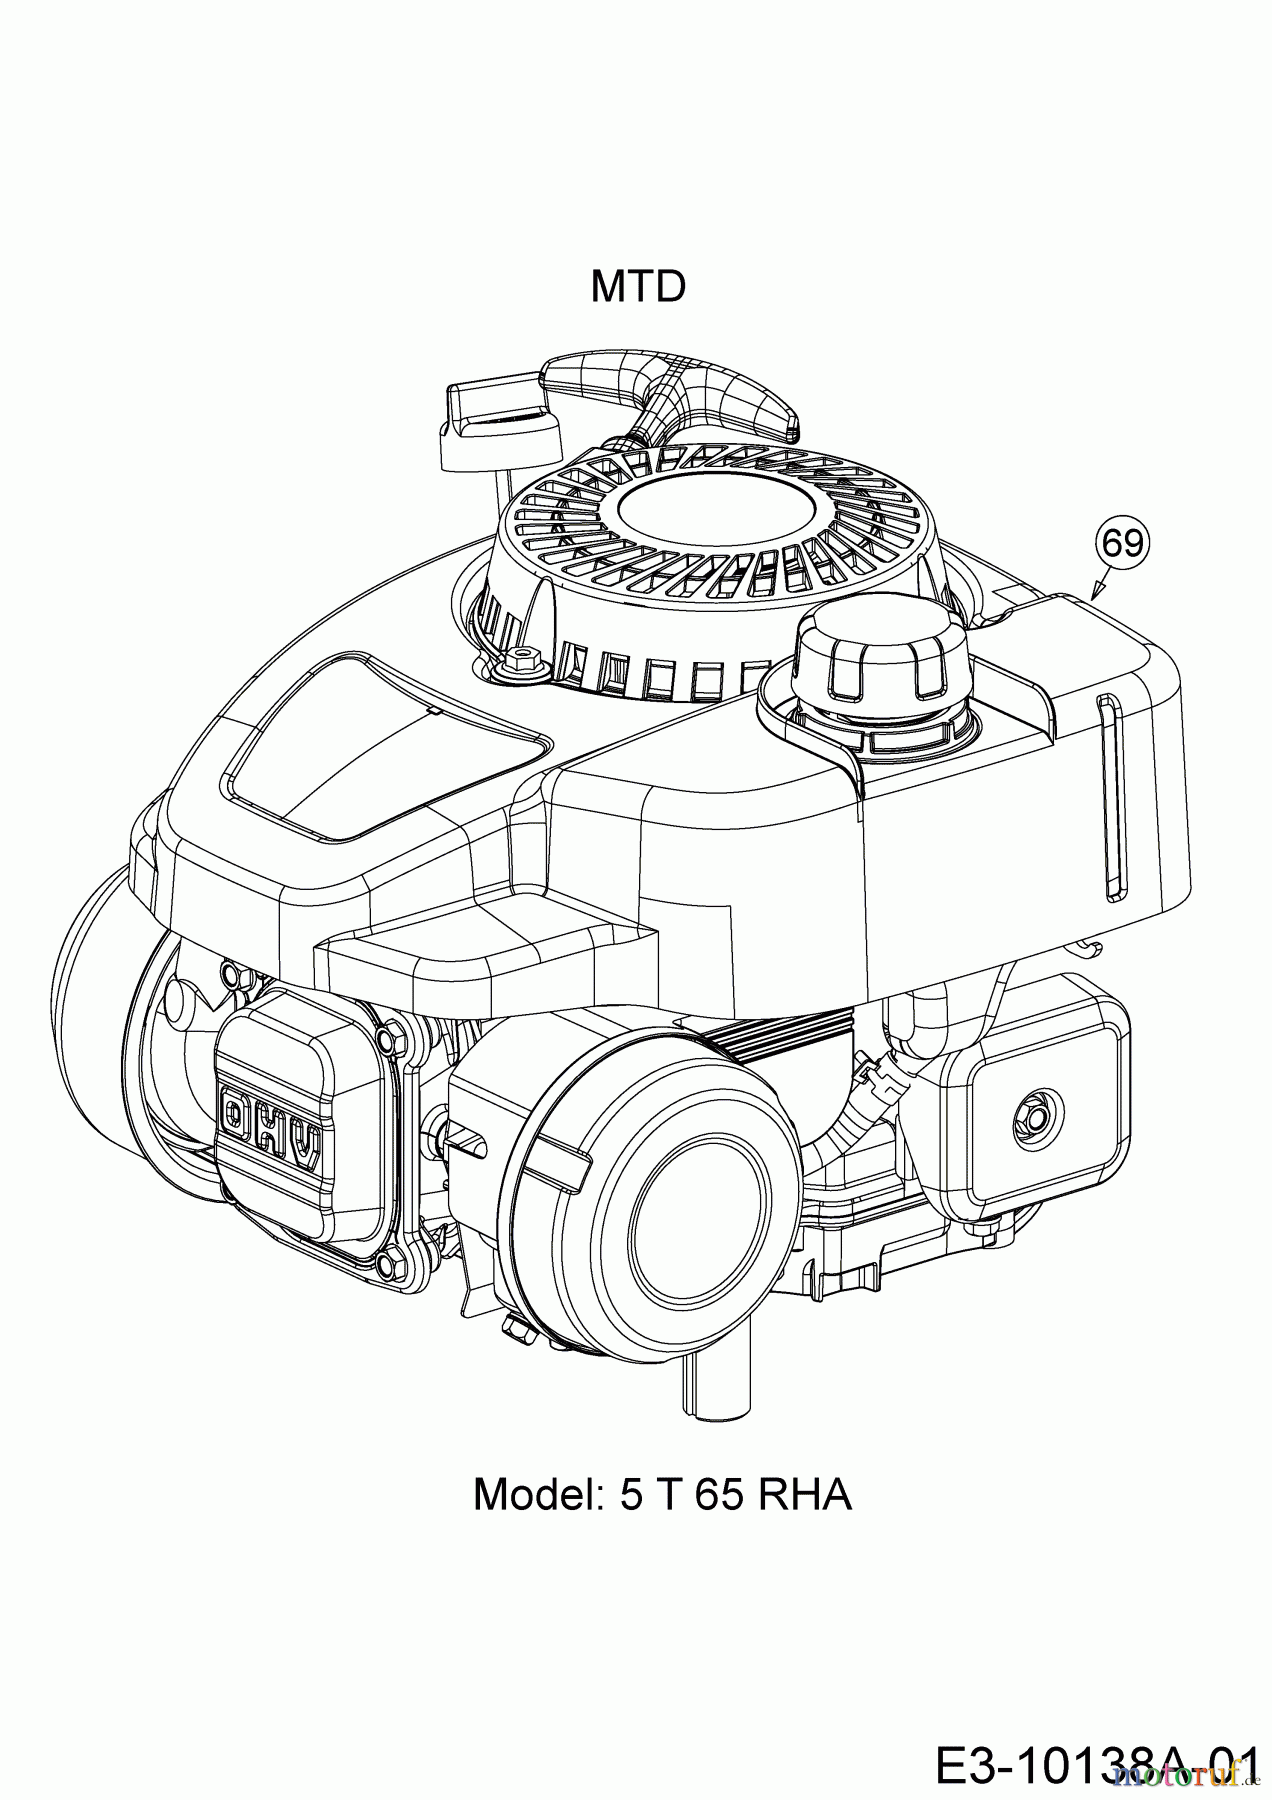  Wolf-Garten Motormäher mit Antrieb A 4600 A 12A-TOSC650  (2018) Motor MTD